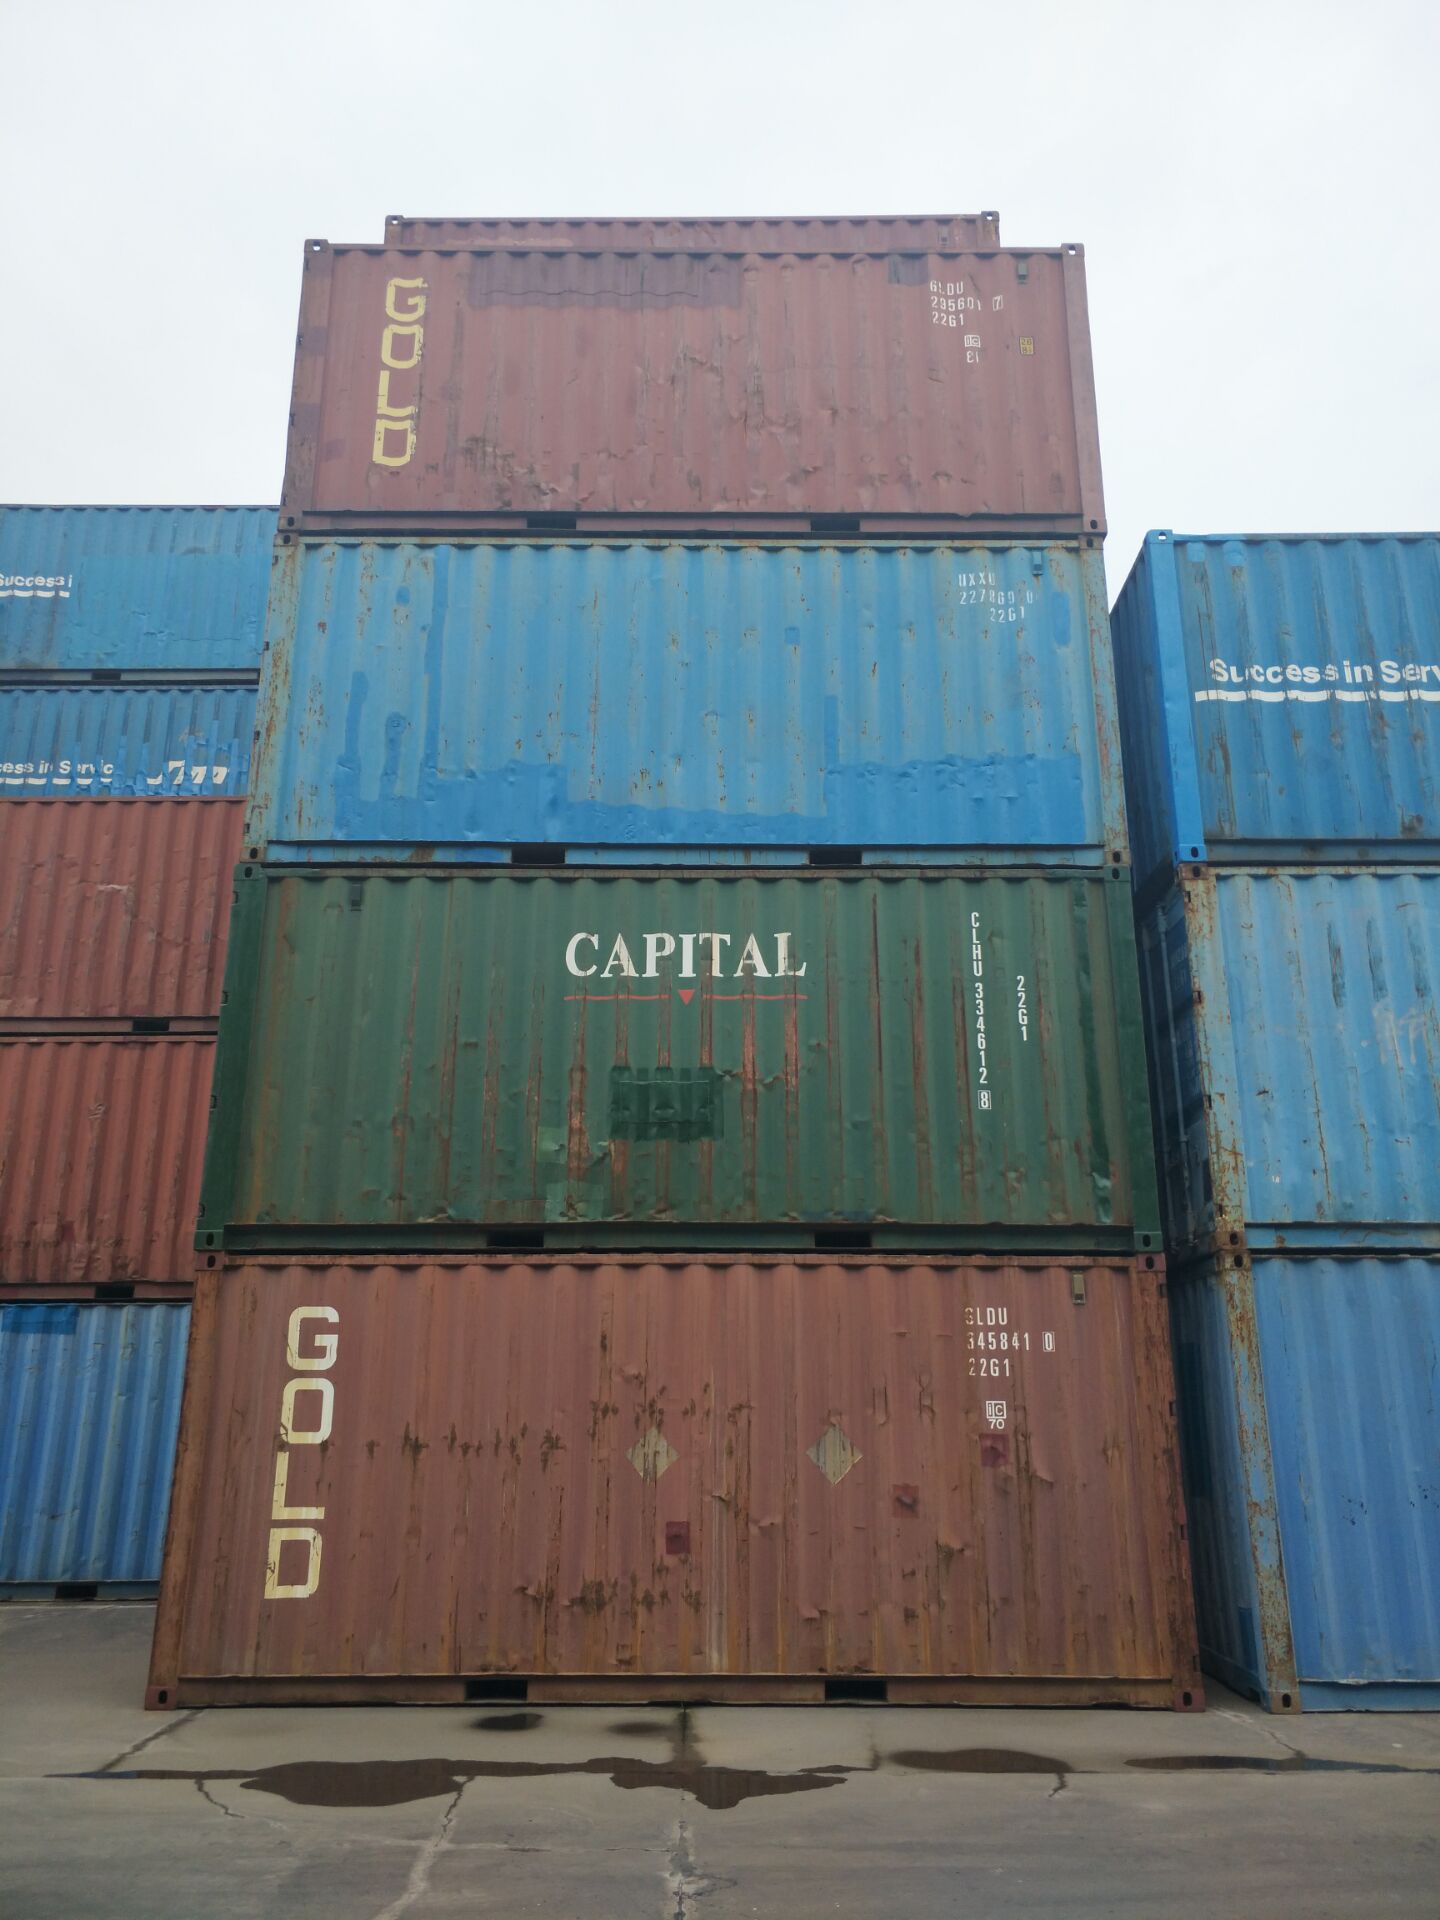 天津港二手集装箱 标准海运集装箱 20尺40尺箱型全价格优